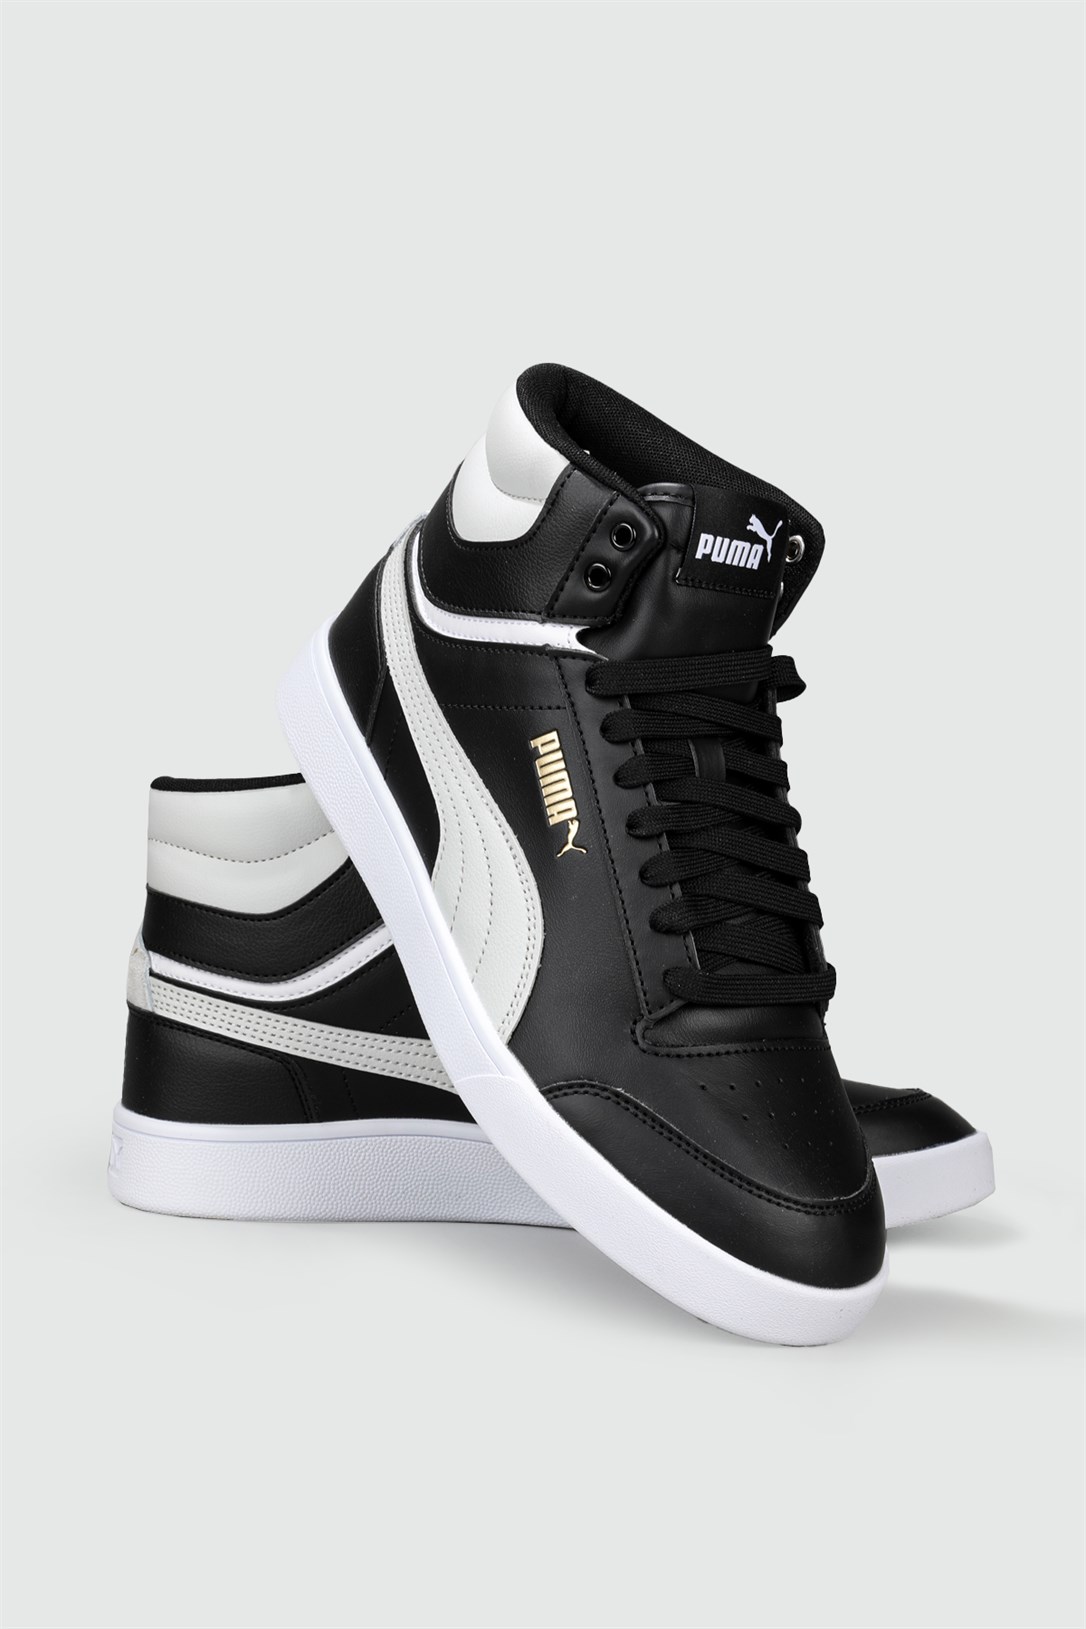 Puma Bilekten Boğazlı Basket Siyah Beyaz Erkek Spor Ayakkabı 380748-02